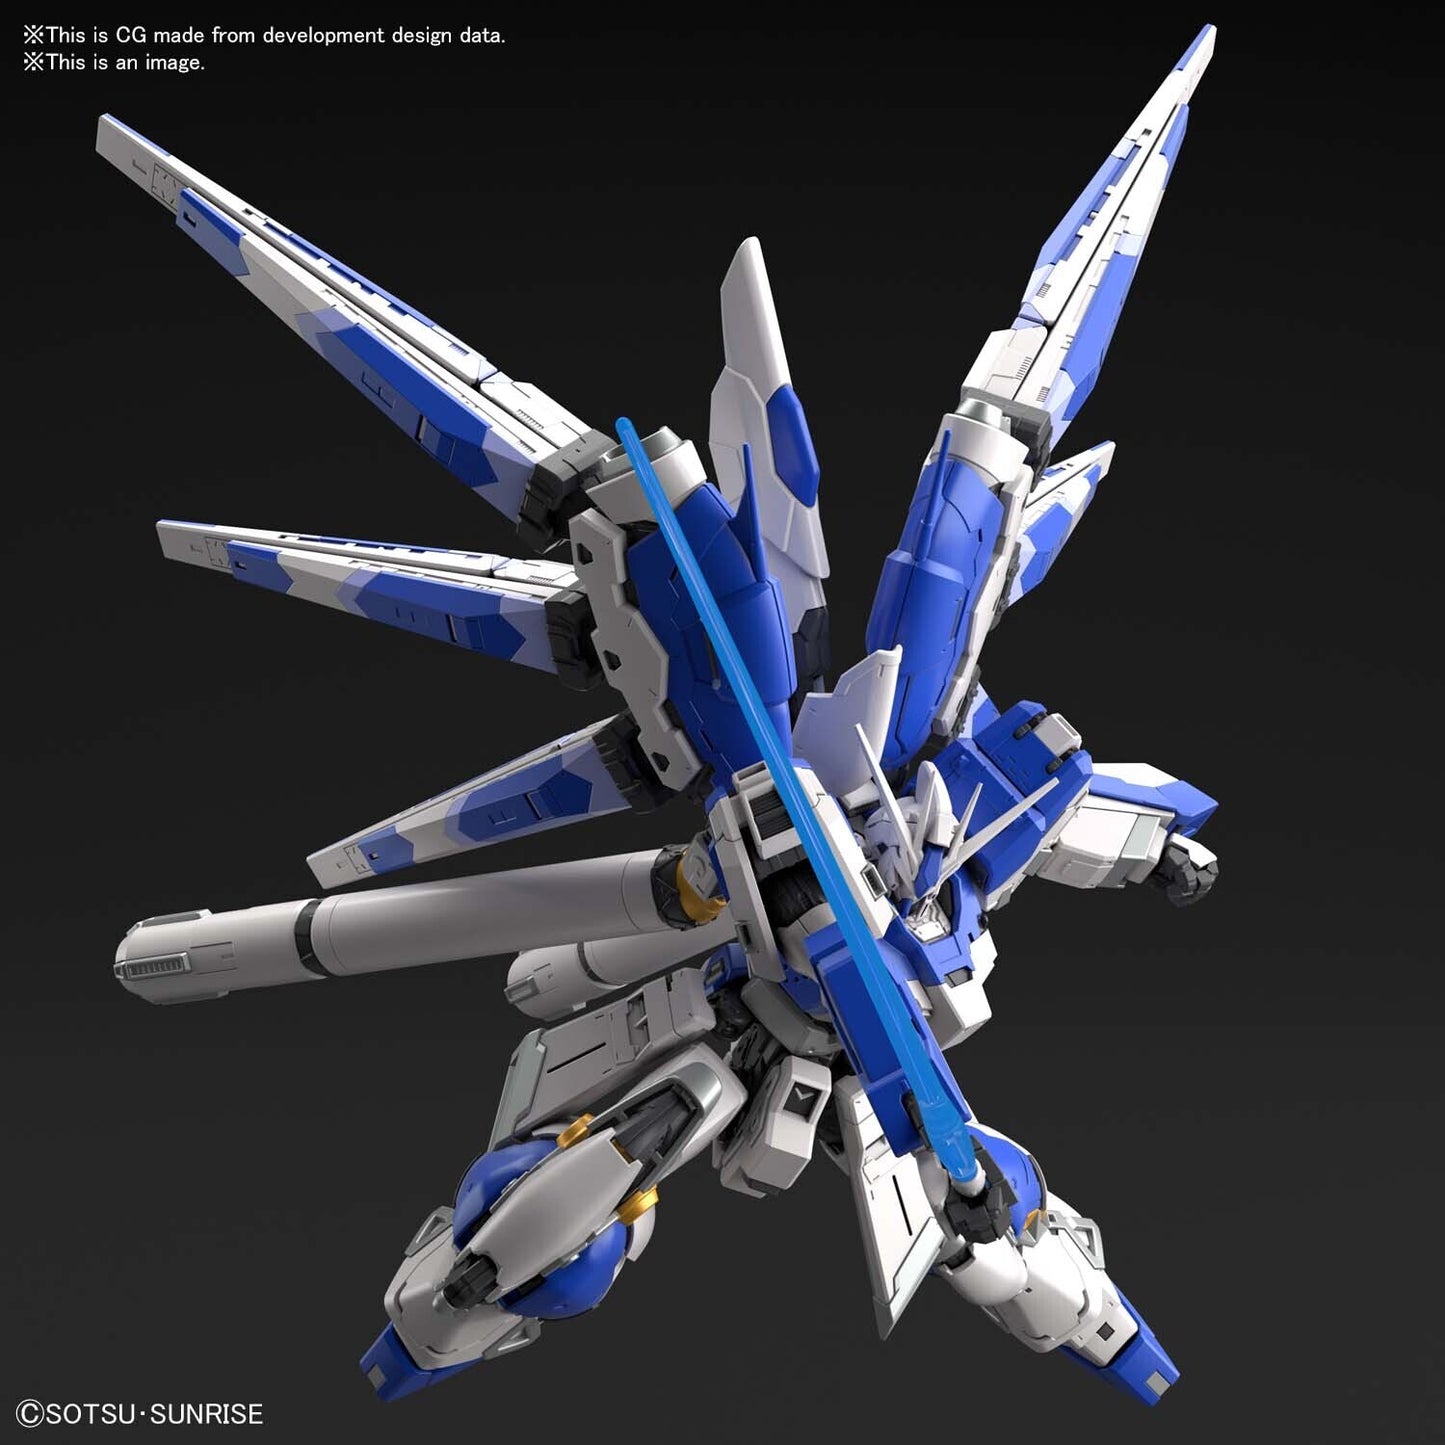 Bandai RG 1/144 Hi-Νu Gundam Model Kit